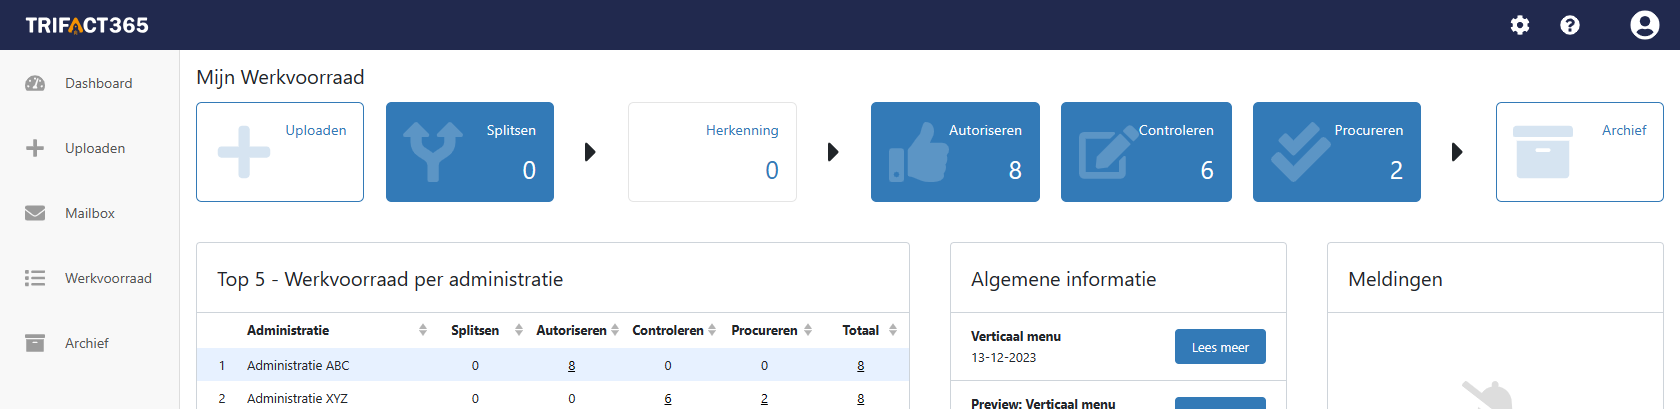 Dashboard met Mijn Werkvoorraad in TriFact365 Scan en Herken software als voorbeeld van rapportages en workflows.